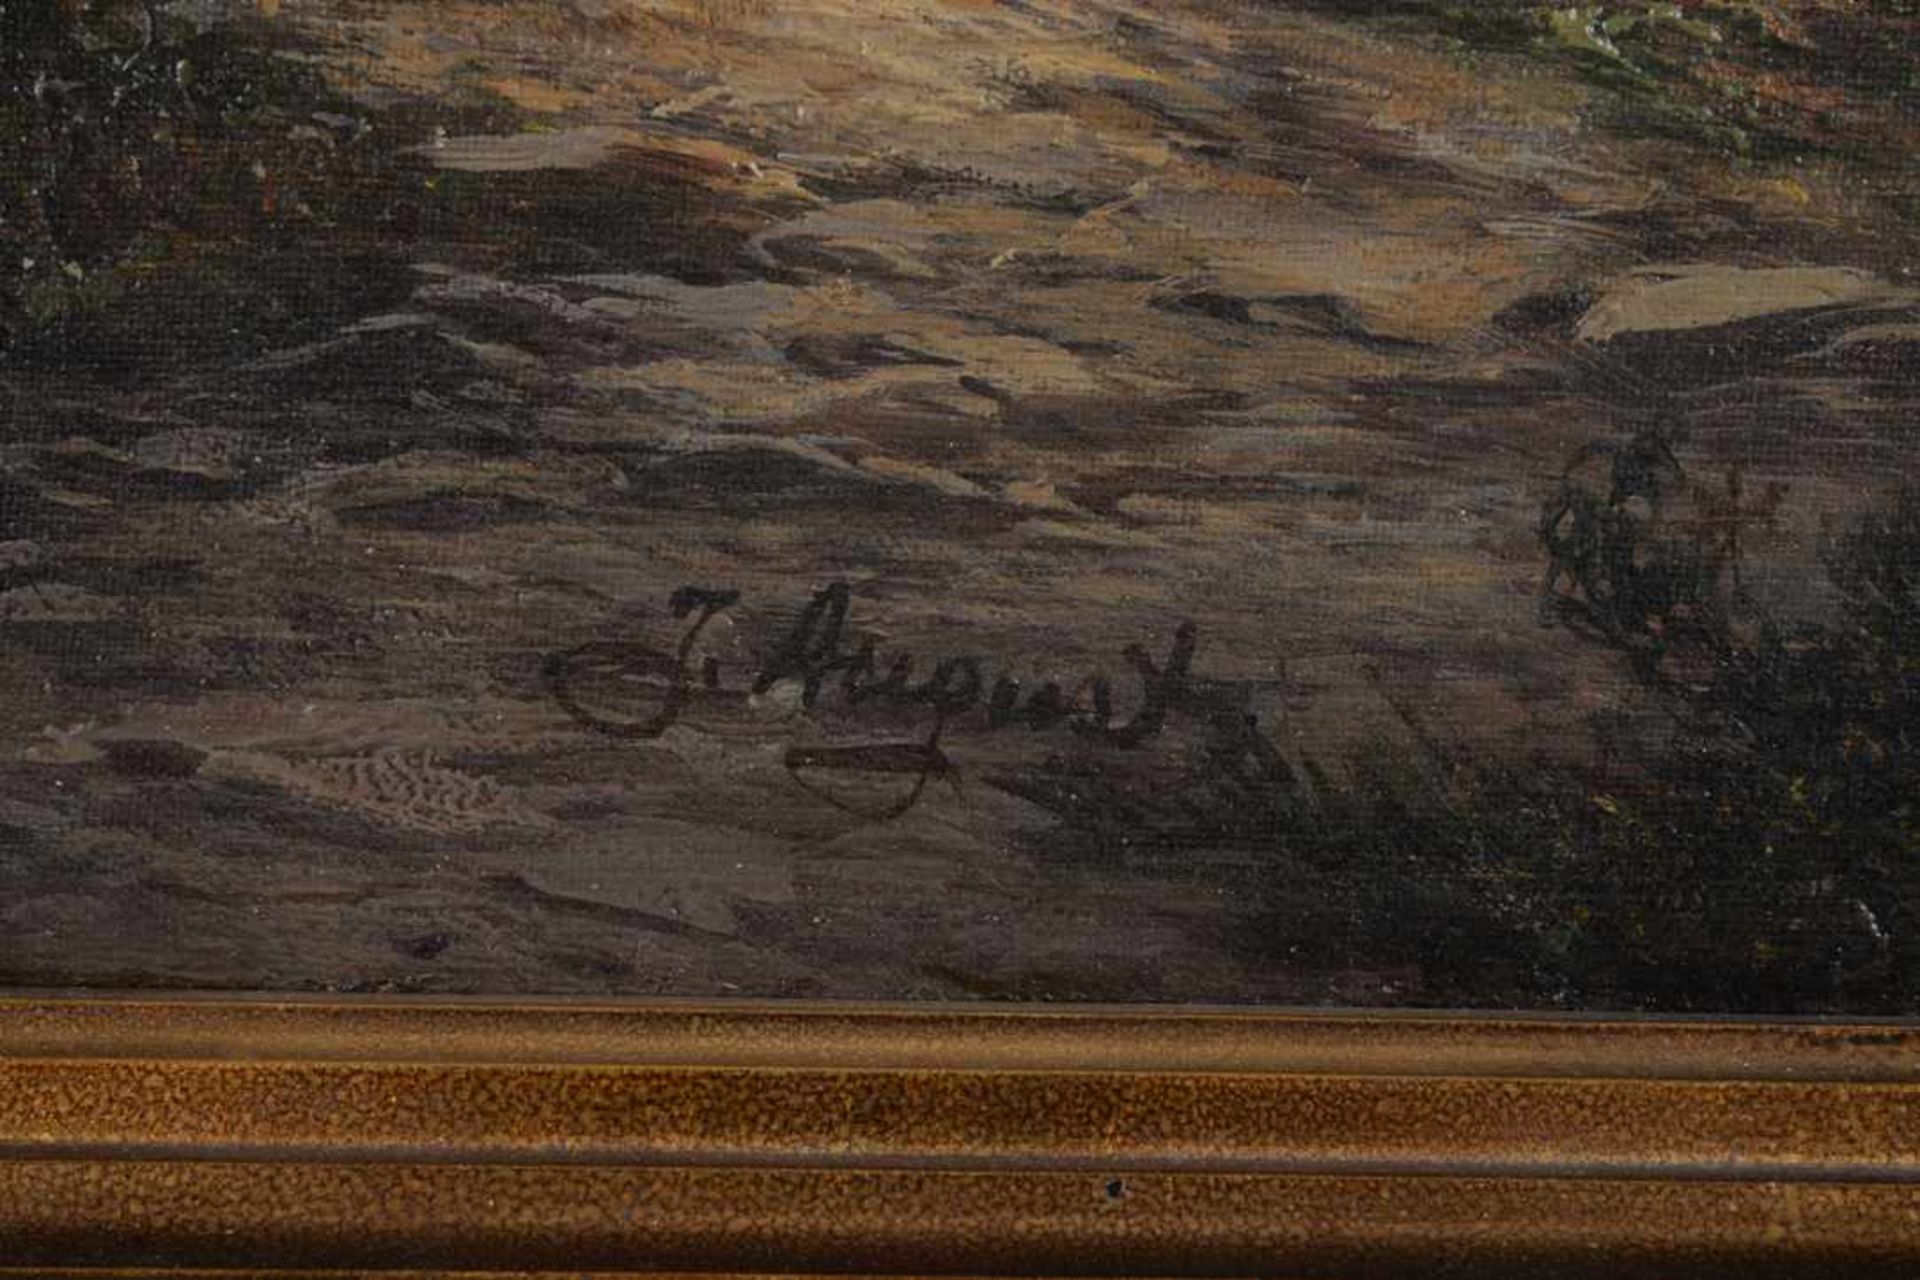 Romantische Landschaft, signiert J. August. Öl auf Leinwand, Datierung um 1870, unten links - Bild 7 aus 7